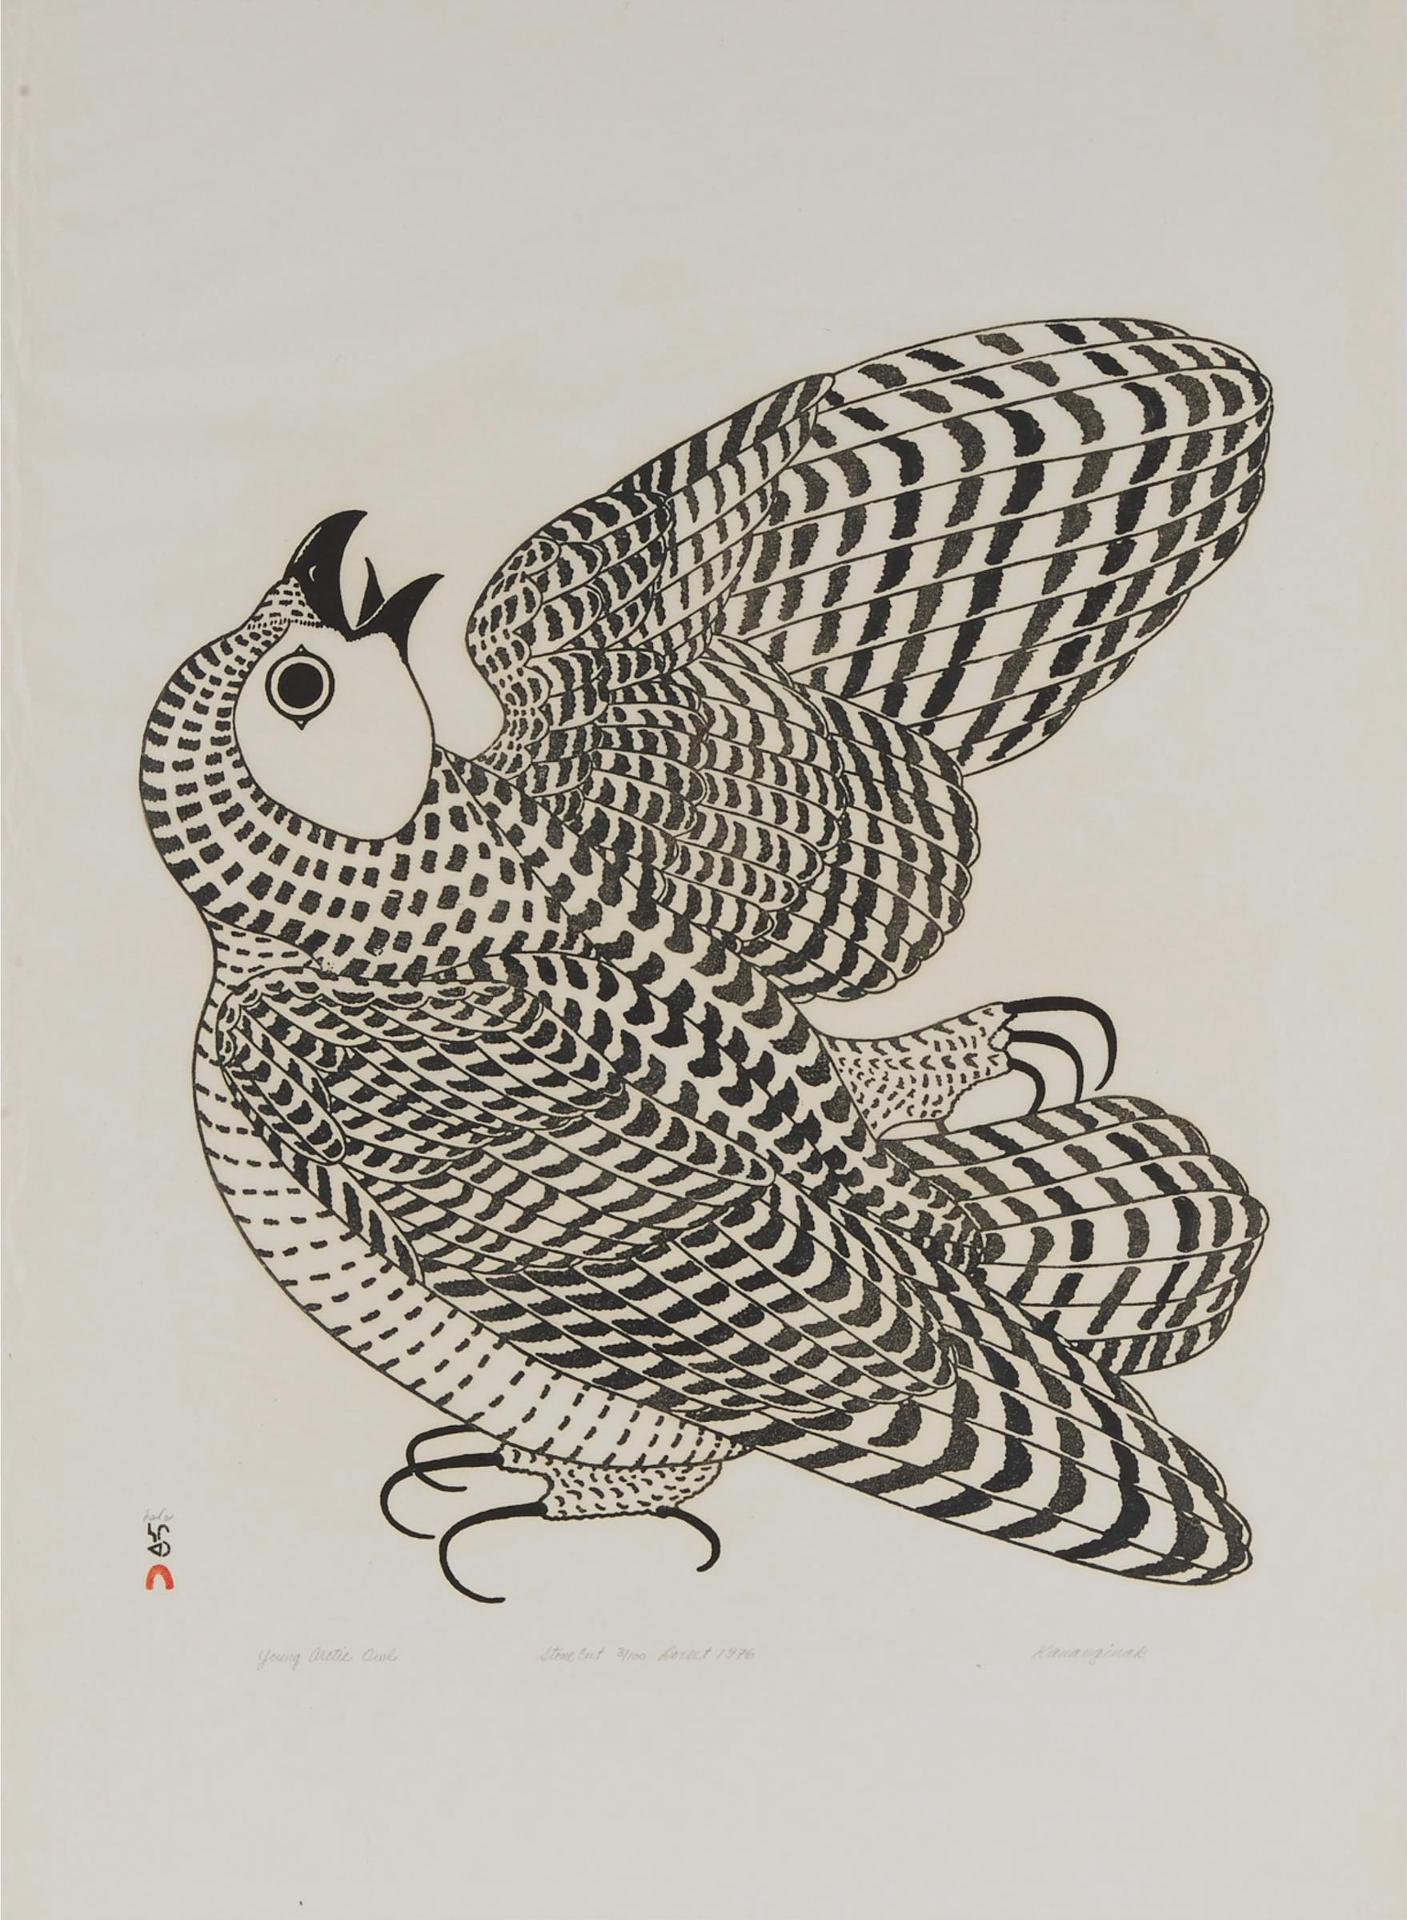 Kananginak Pootoogook (1935-2010) - Young Arctic Owl